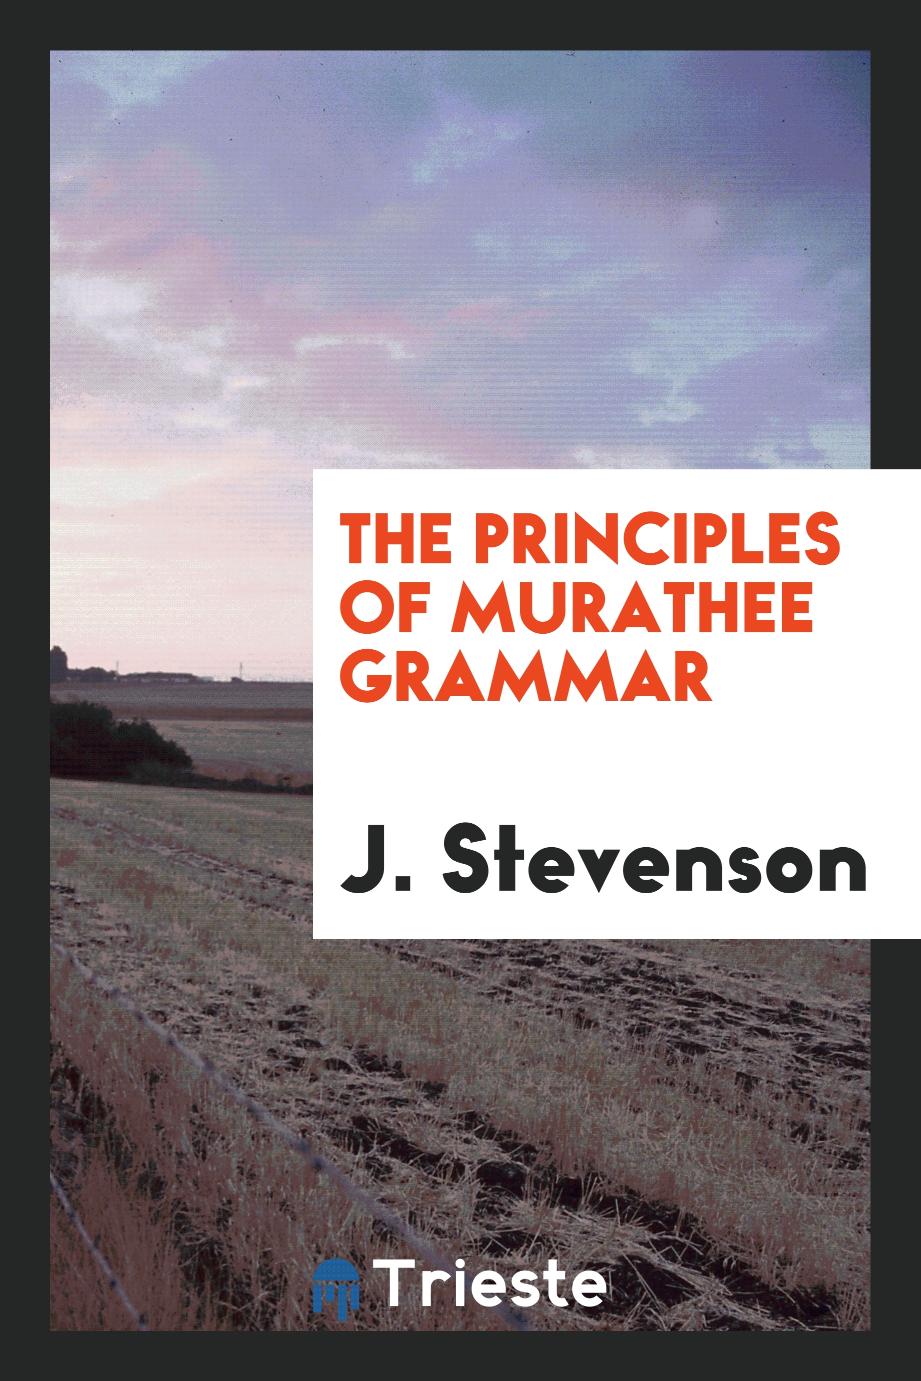 The principles of Murathee grammar